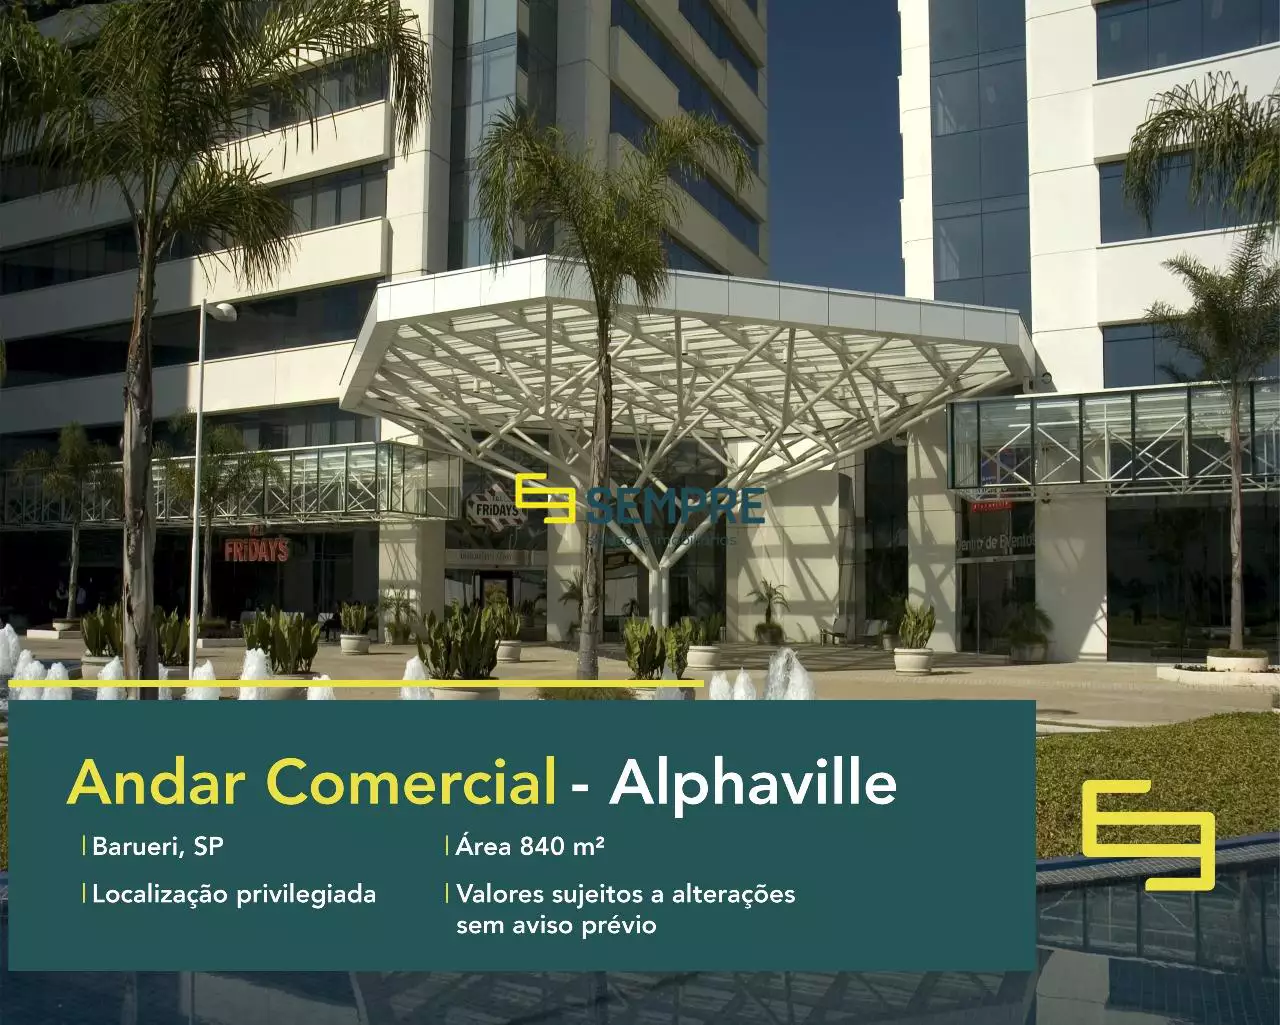 Andar corporativo no CA Rio Negro para locação - Alphaville, excelente localização. O estabelecimento comercial conta com área de 840,50 m².